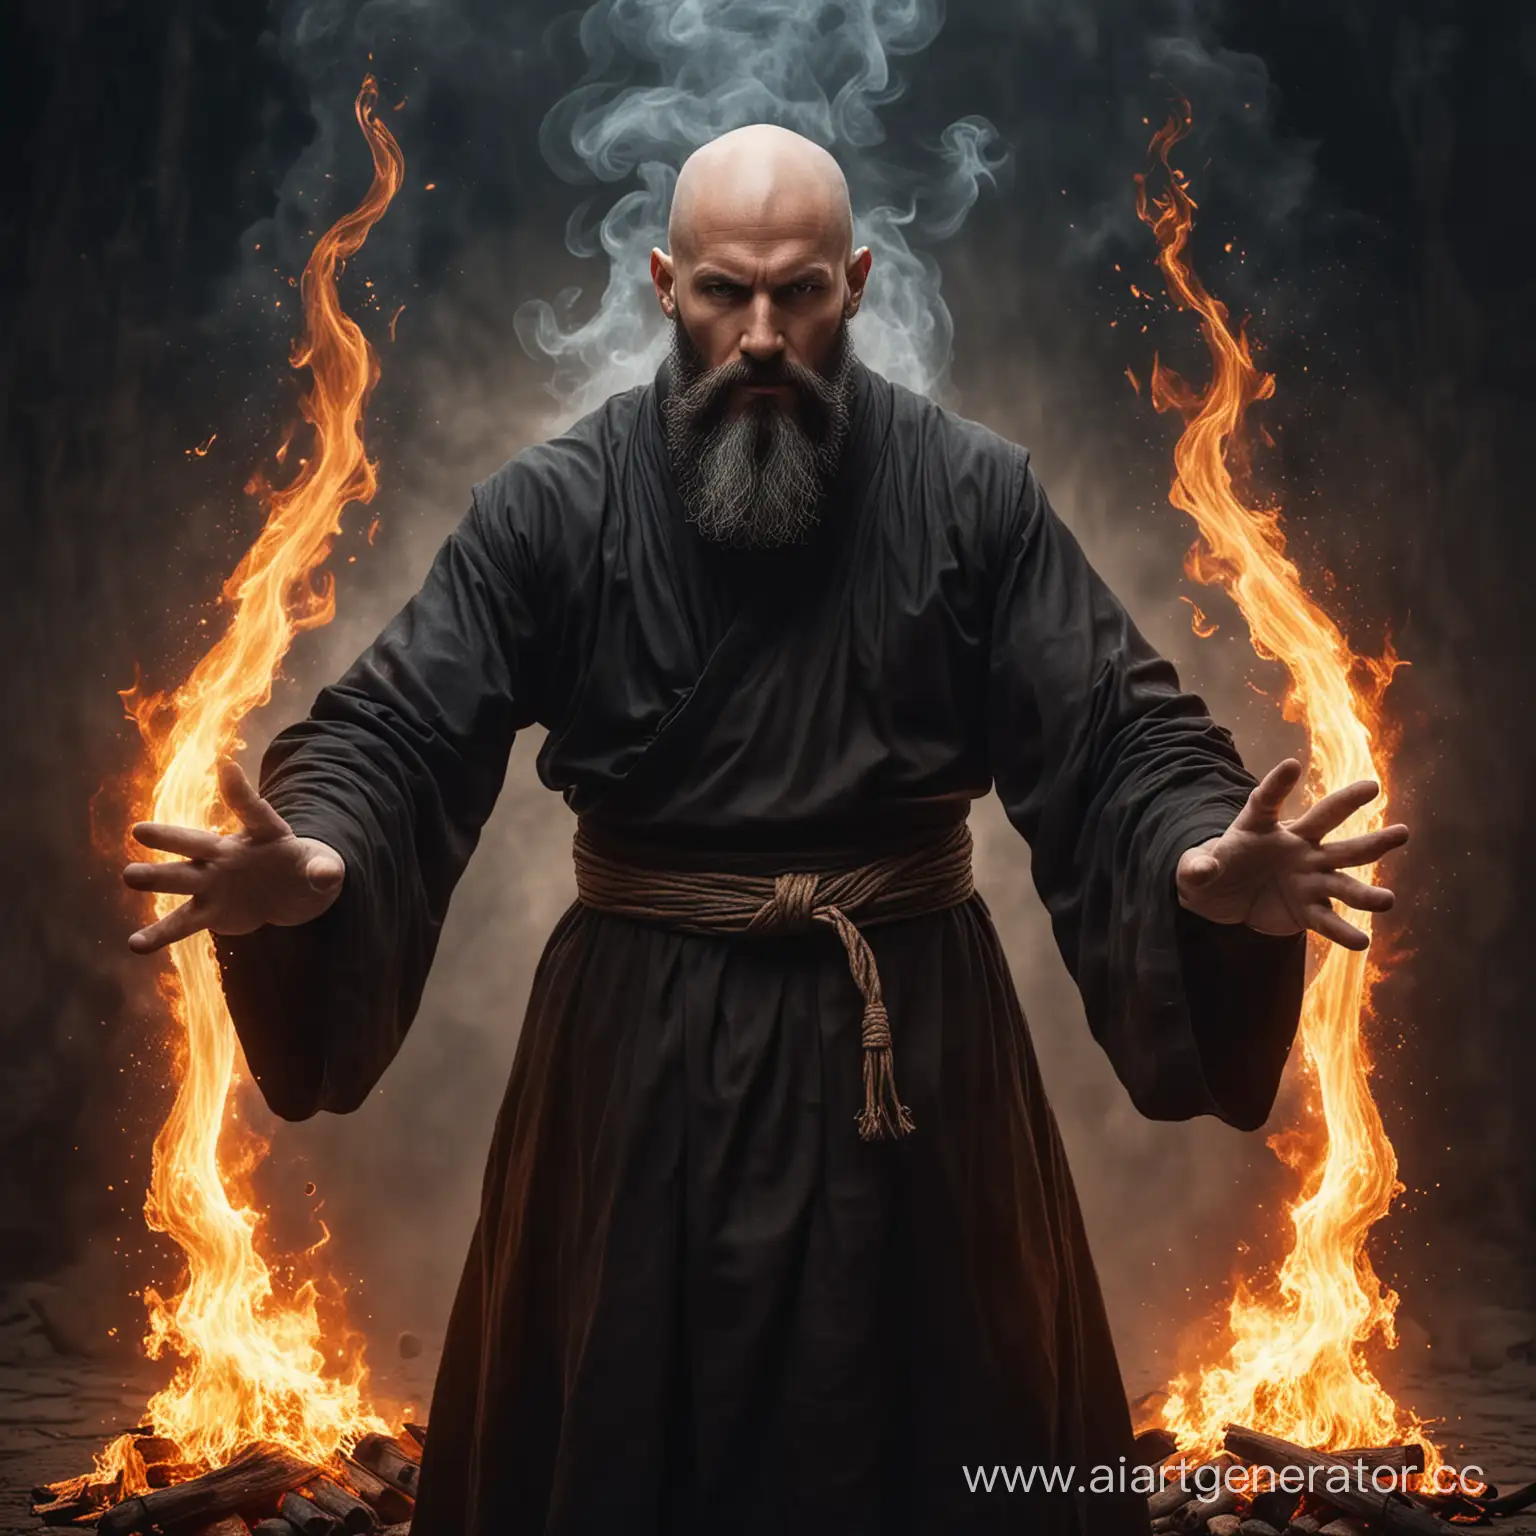 Мужчина монах лет 50, лысый с черной бородой, владеет огненой магией в руках, фэнтезийный мир